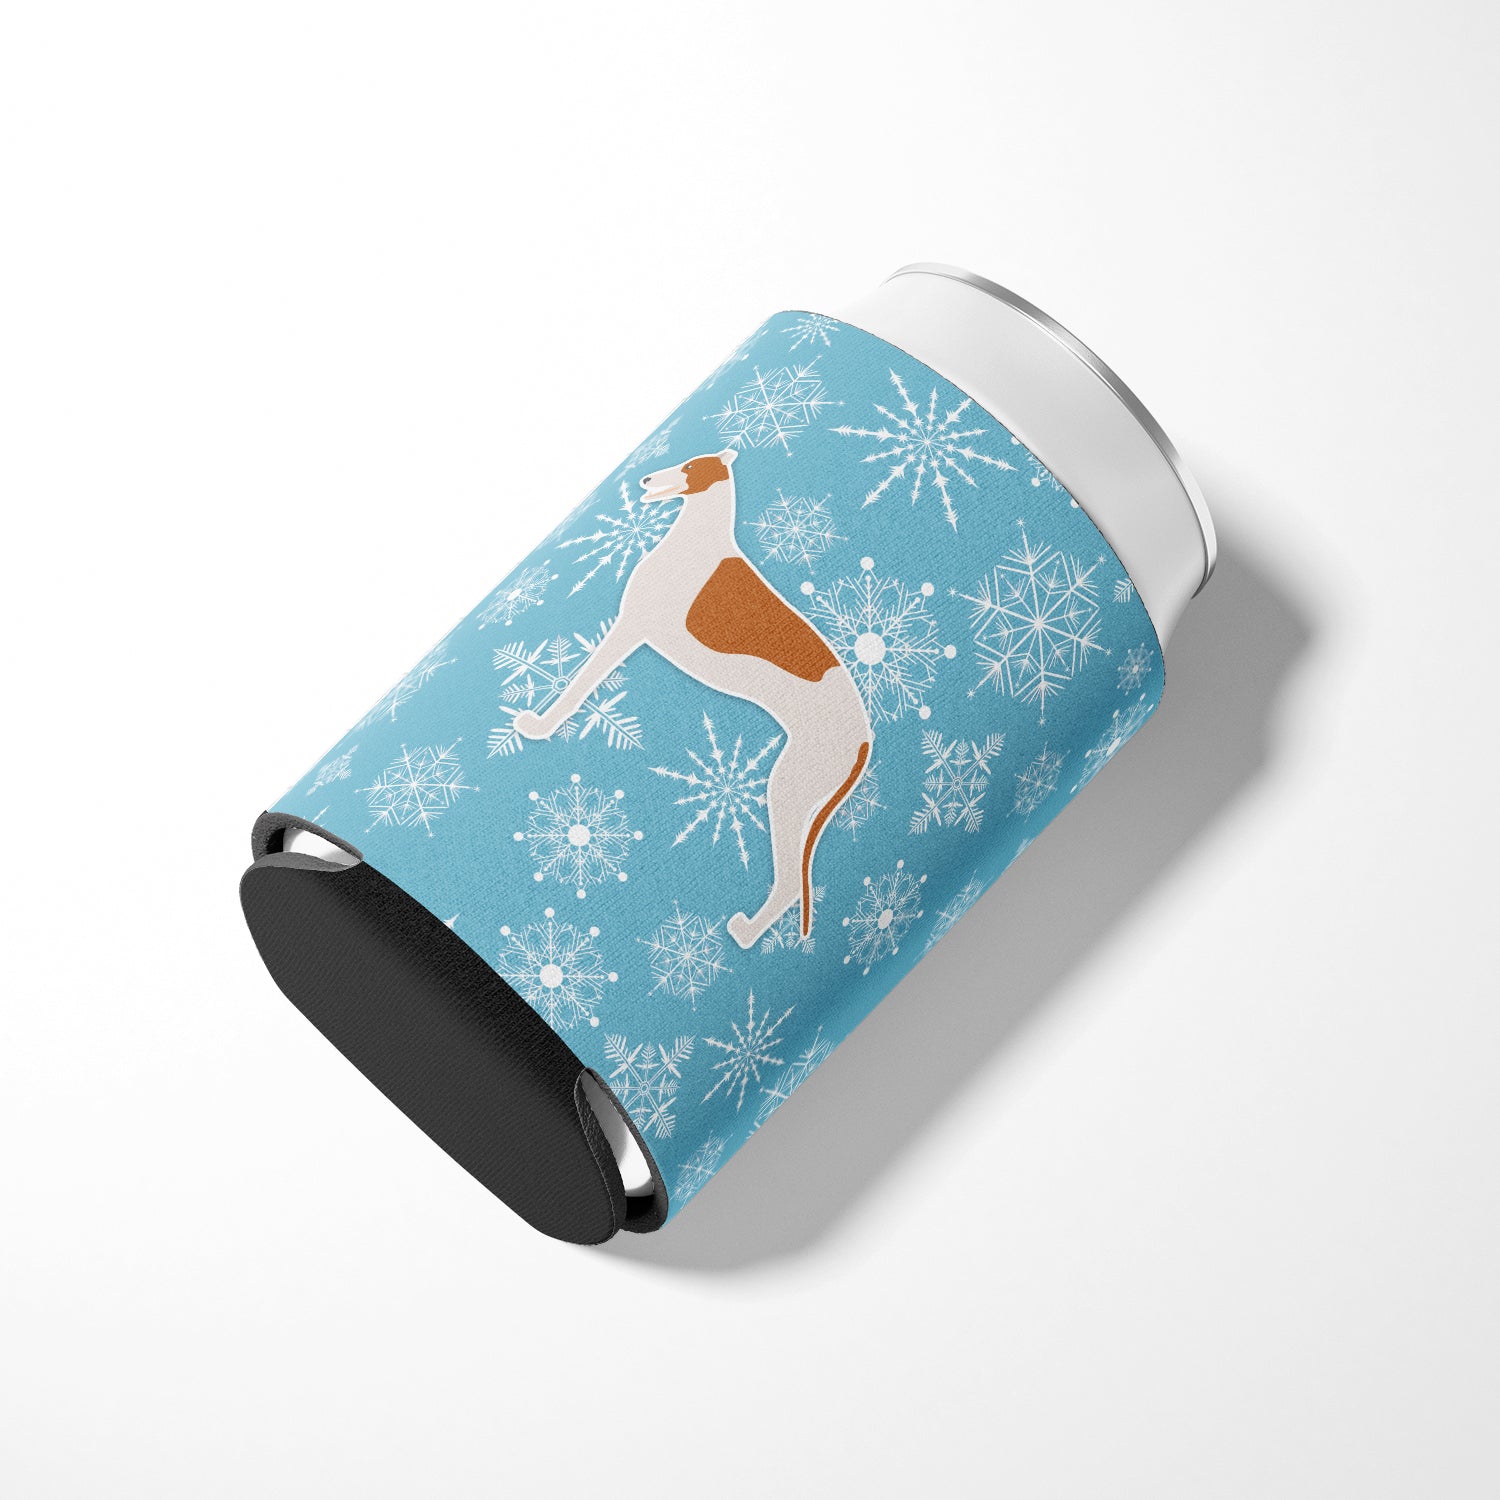 Winter Snowflake Greyhound Porte-canette ou porte-bouteille BB3505CC